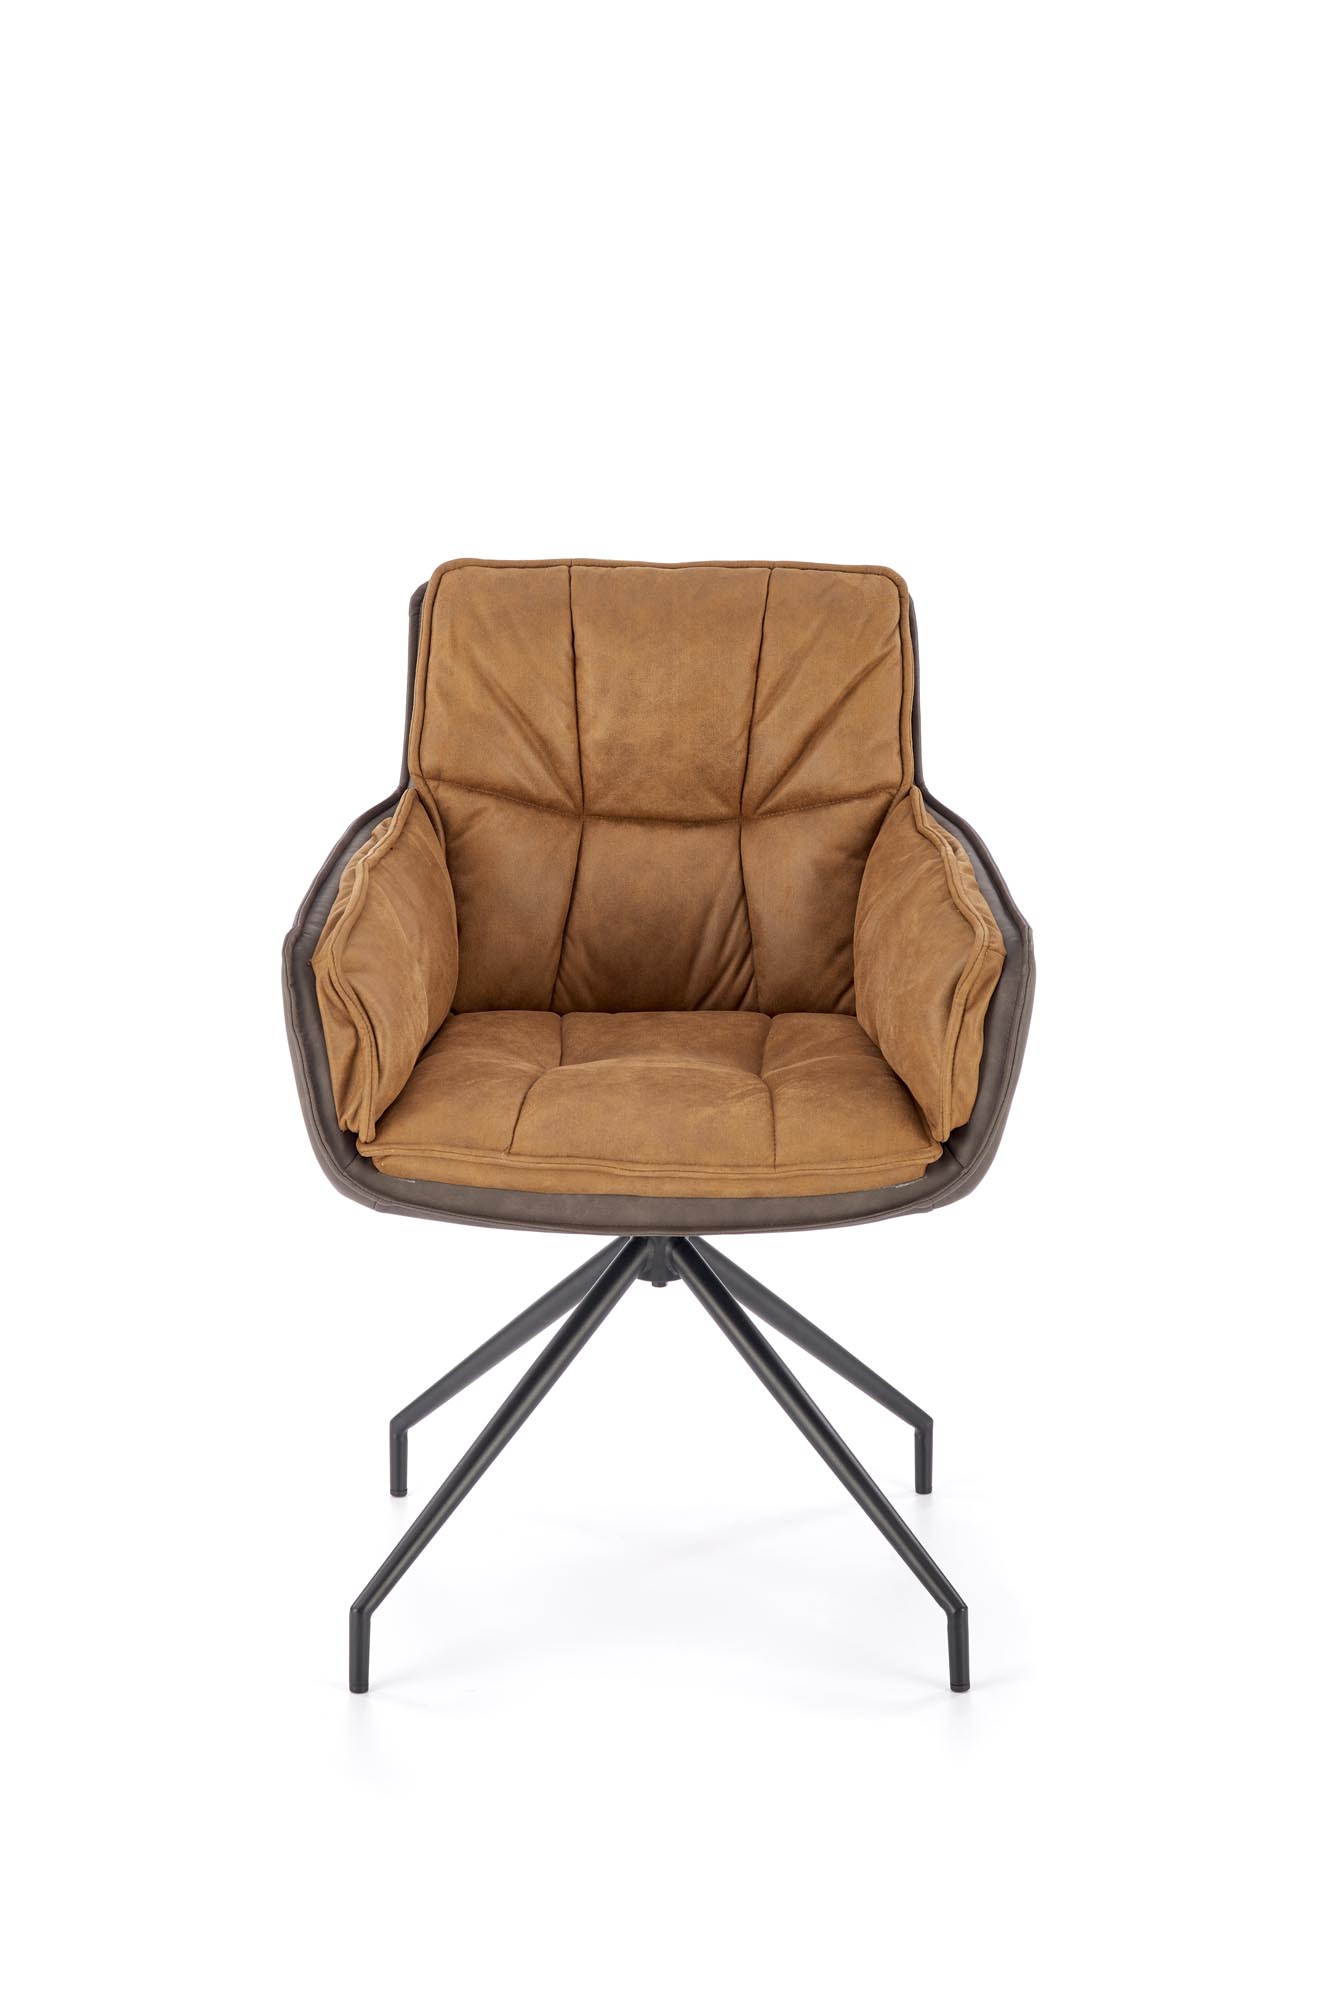 Krzesło taicerowane K523 - brązowy / ciemny brąz krzesło taicerowane k523 - brązowy / ciemny brąz